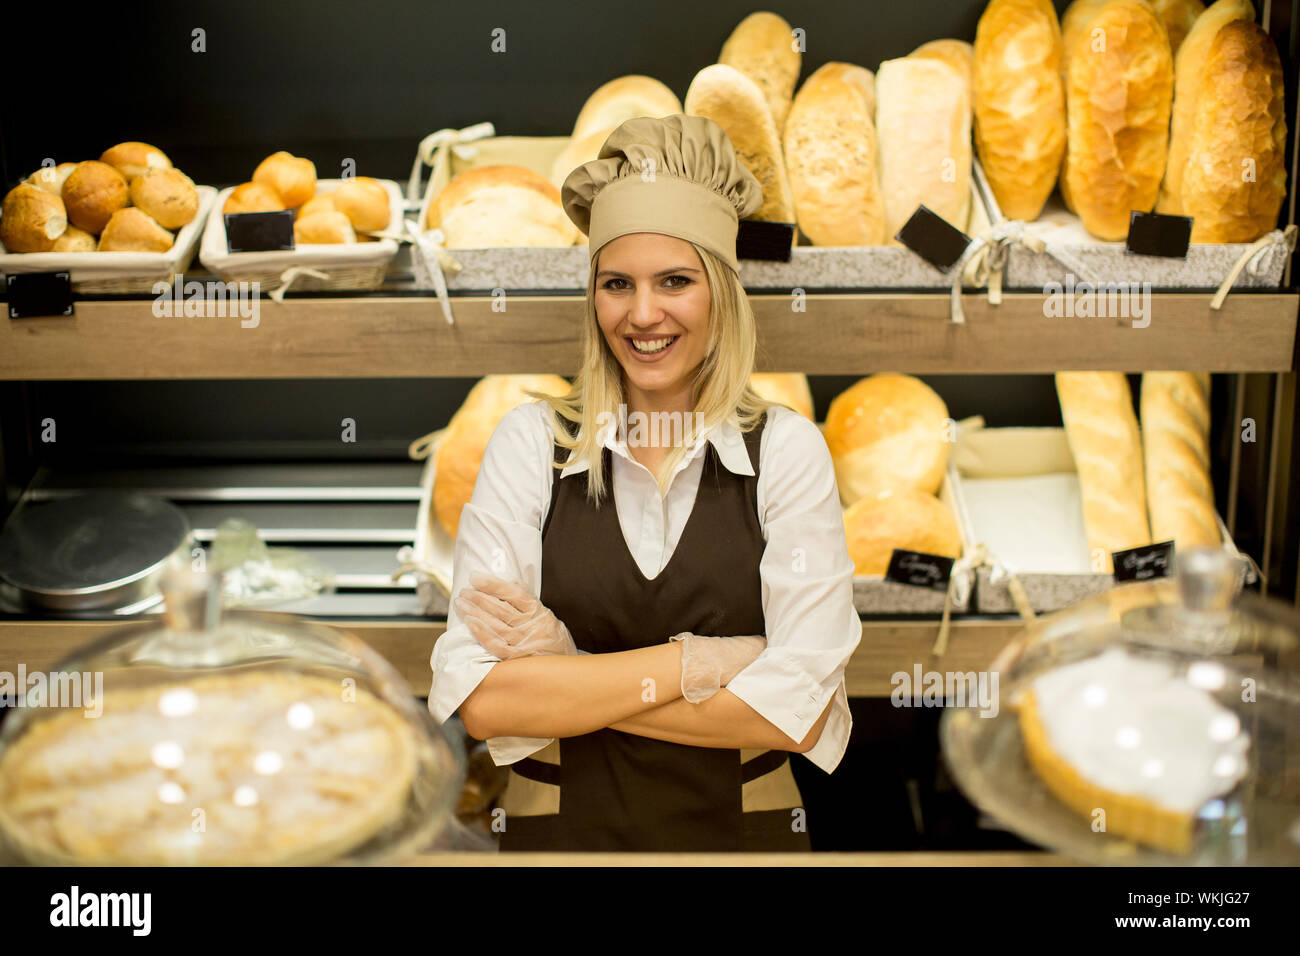 https://c8.alamy.com/comp/WKJG27/portrait-of-friendly-female-baker-with-fresh-bread-smiling-in-bakery-WKJG27.jpg